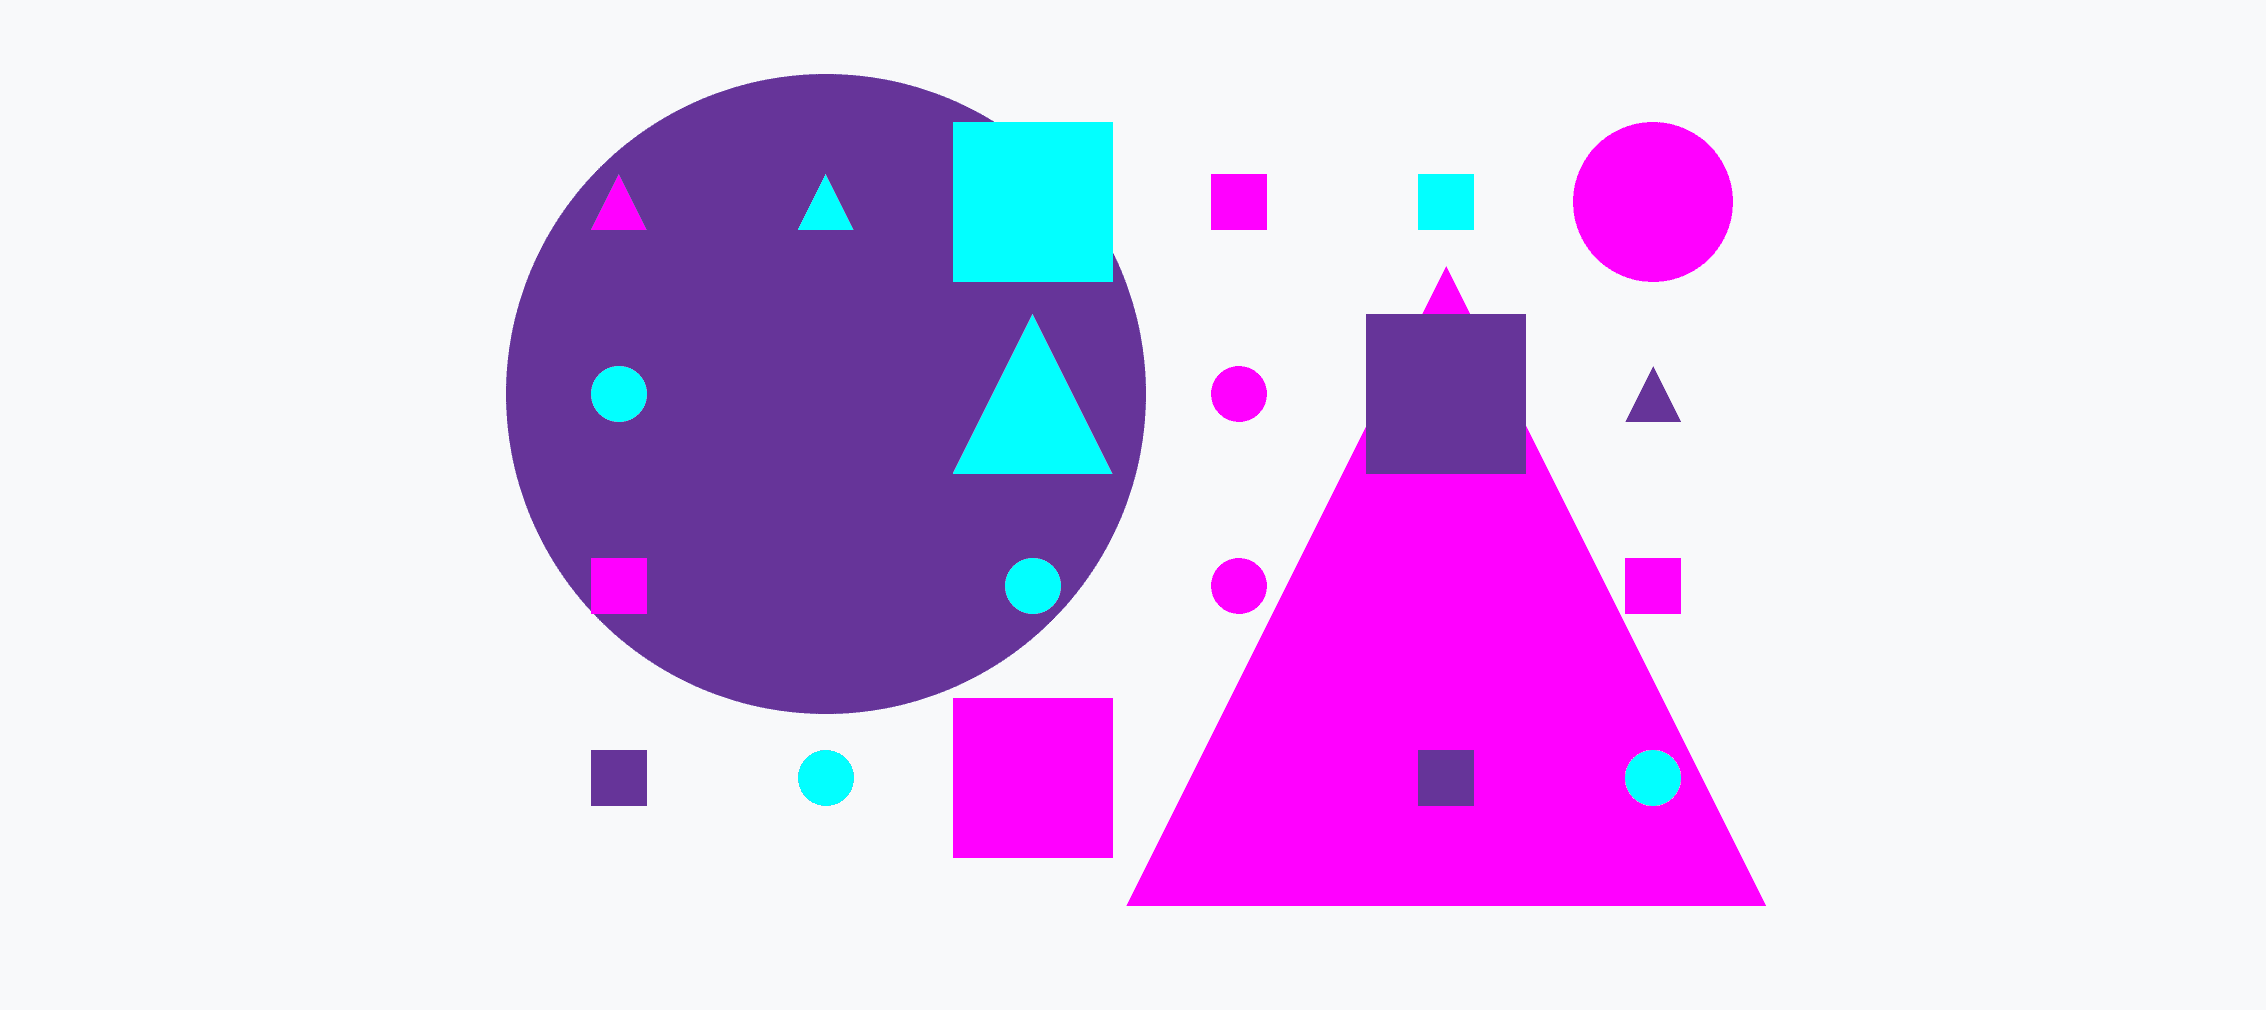 Một lưới nhiều màu sắc gồm các hình tròn nhỏ và lớn, hình tam giác và hình vuông.